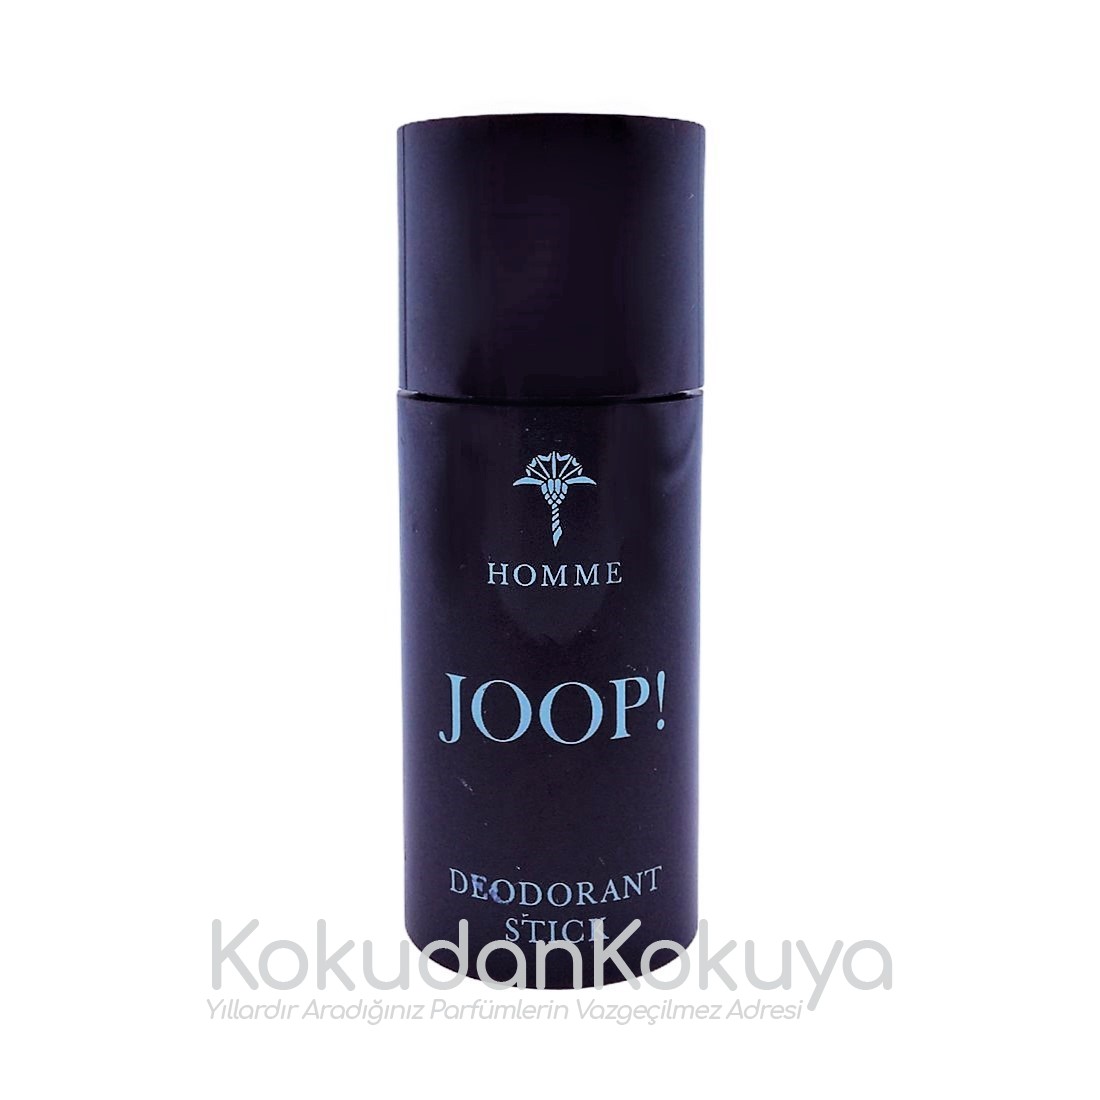 JOOP Homme (Vintage) Deodorant Erkek 20ml Deodorant Stick 